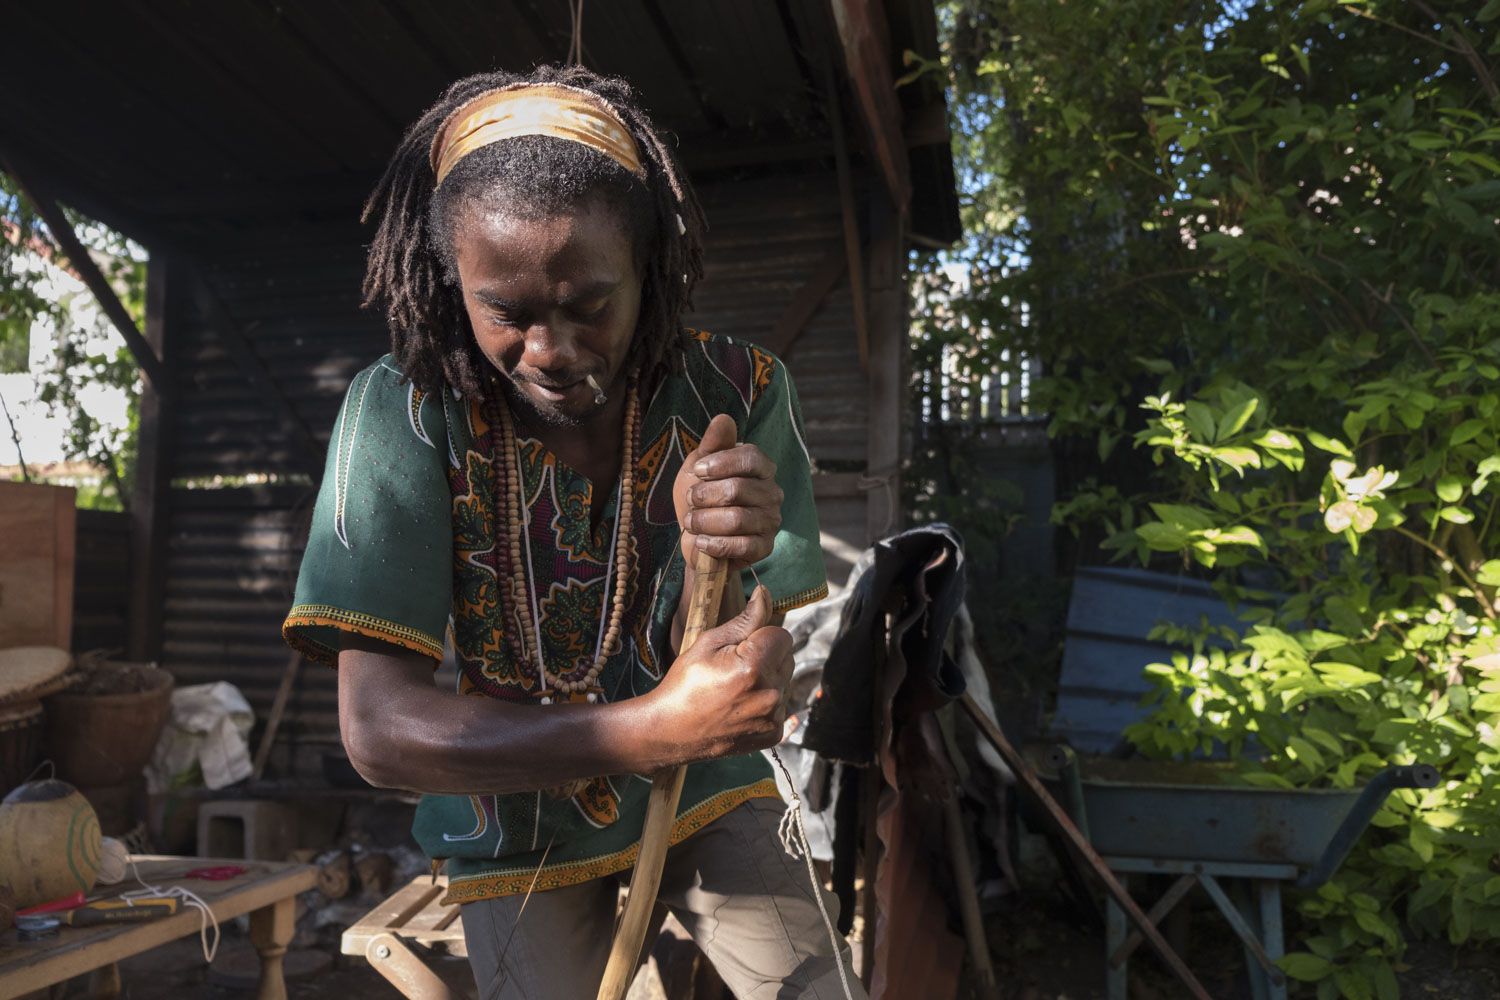 Jean-Pierre dans son jardin répare un bobre (bob en créole), un instrument à corde, avec une calebasse pour caisse de résonnance. Le bobre est un instrument typique du Maloya. Avec le kayamb, et le roulèr, ils sont les trois instruments de base du Maloya.